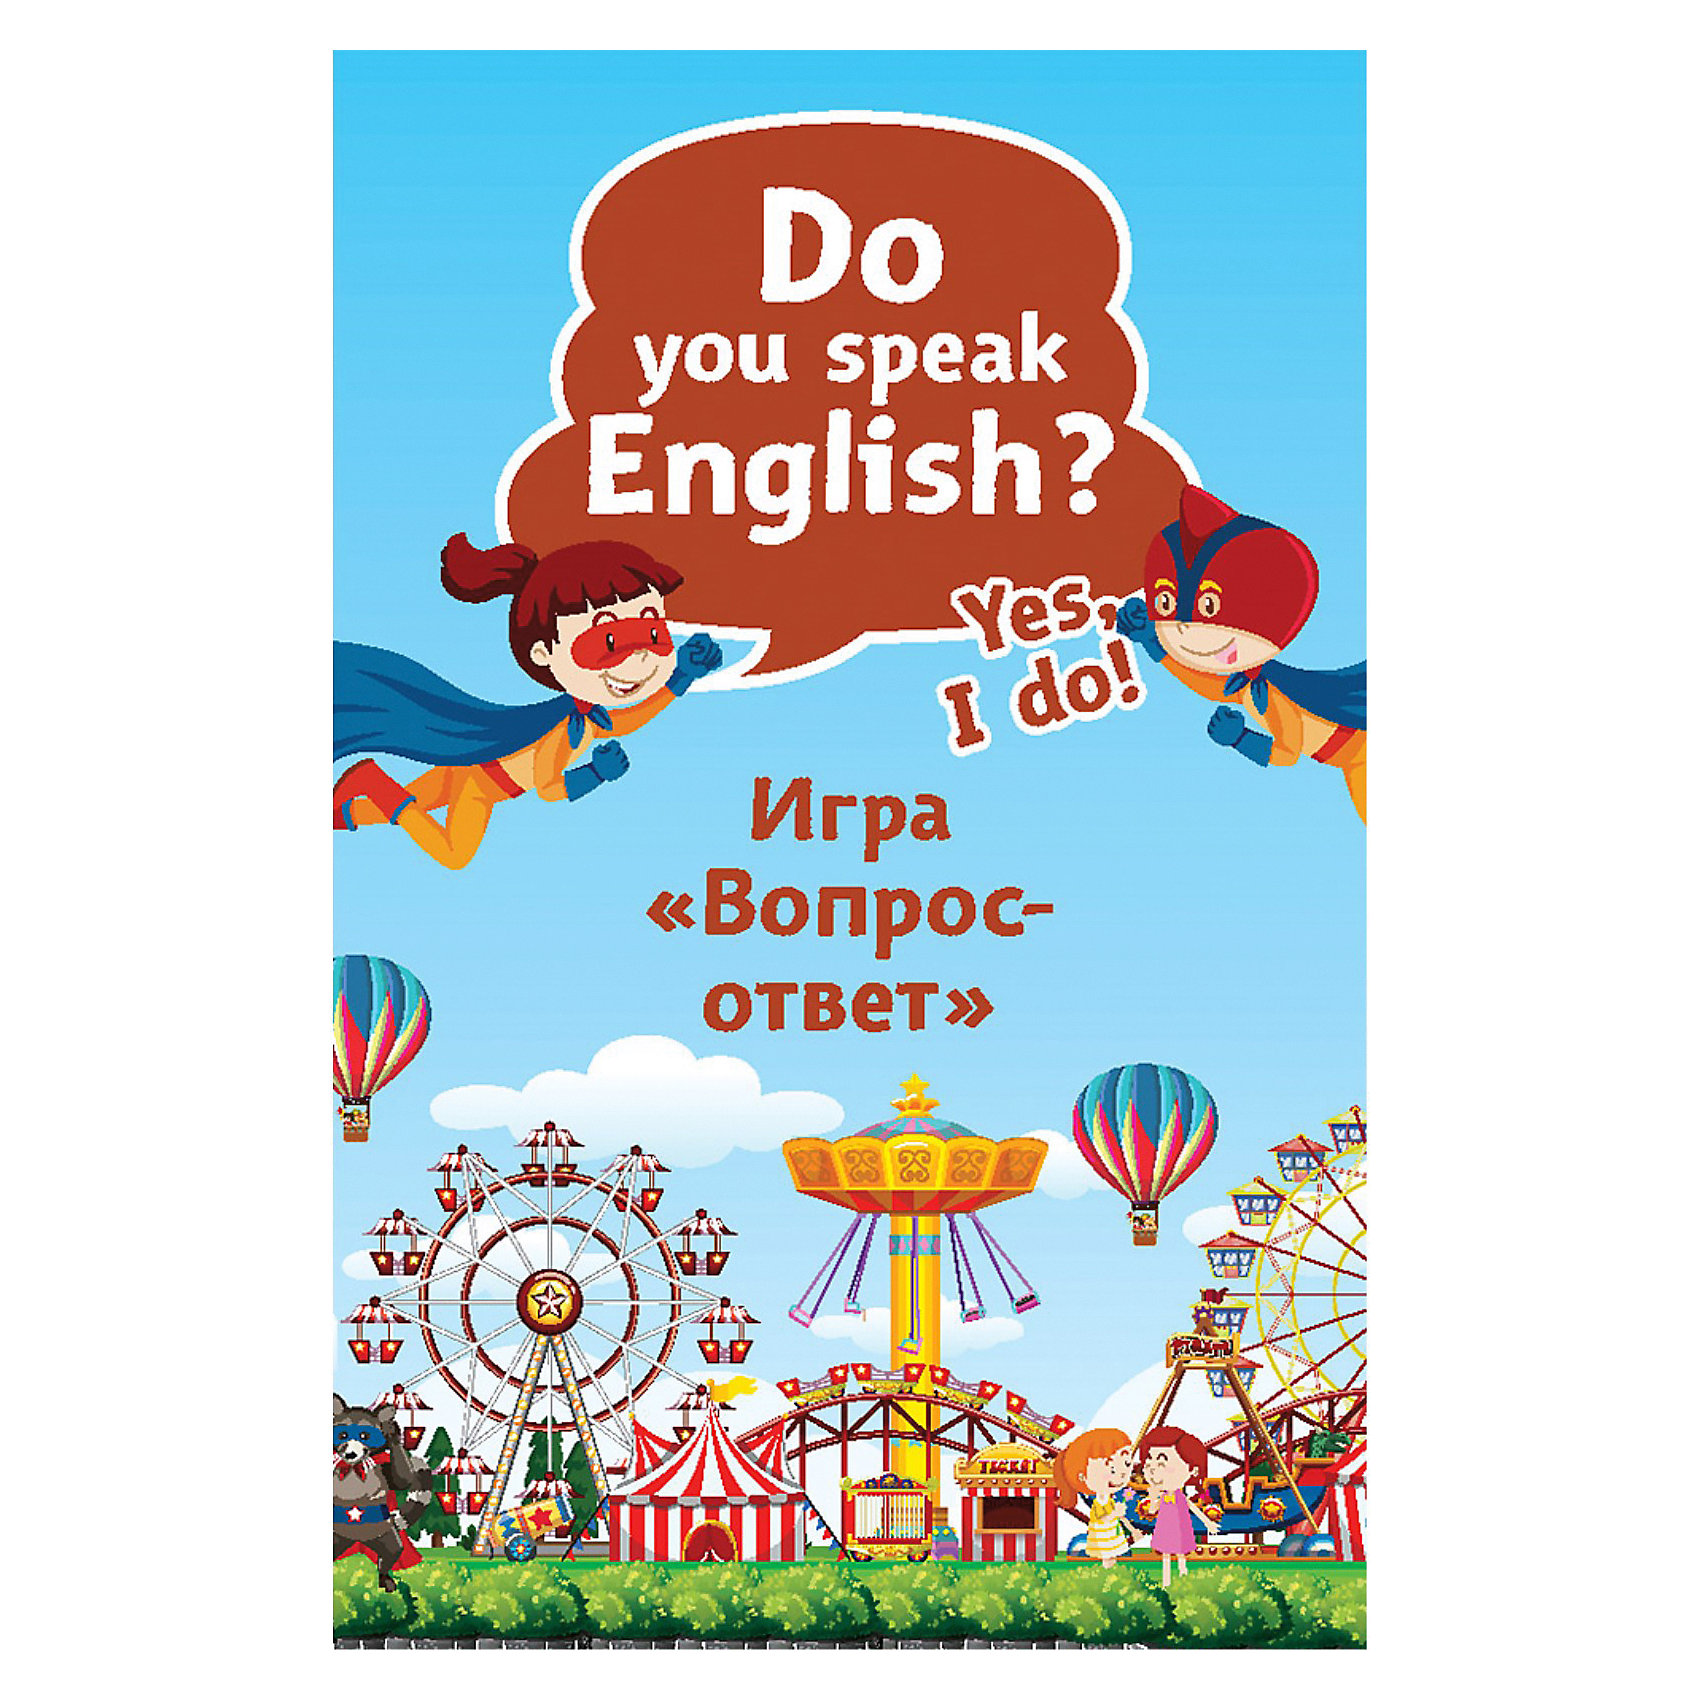 Do you speak english yes. Do you speak English Yes i do. Игра you Doo.